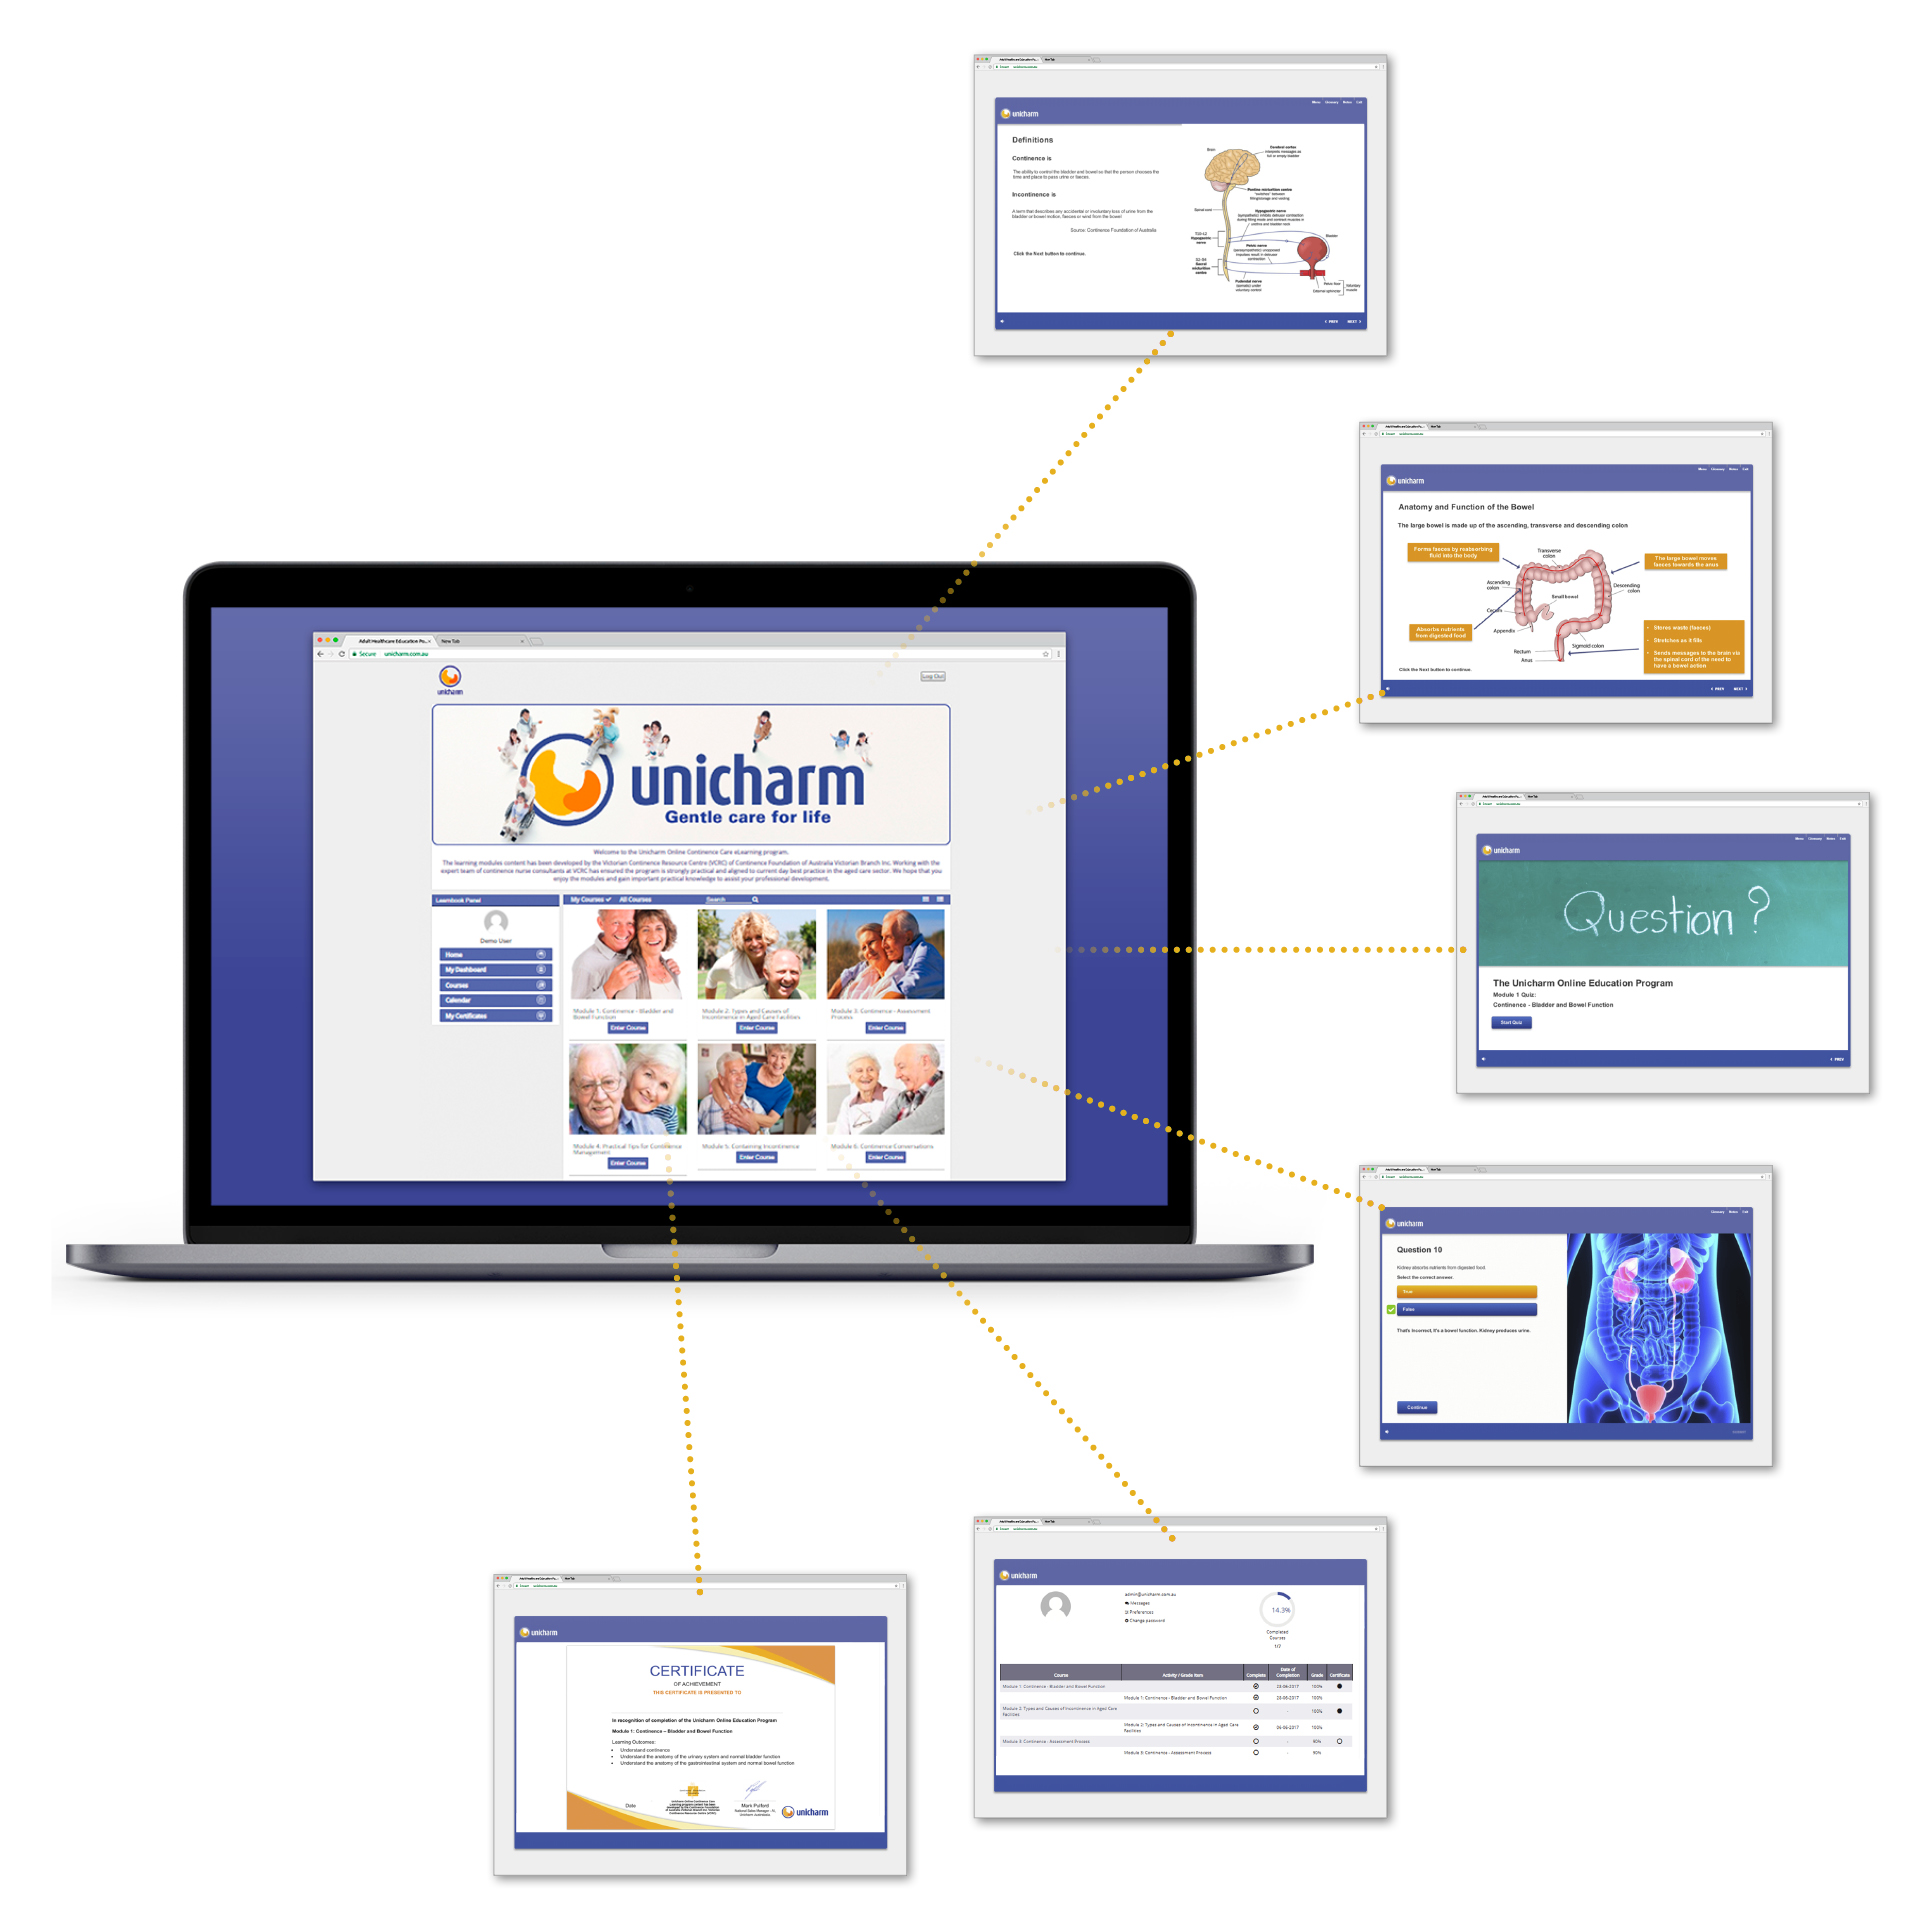 Unicharm Adult Healthcare Online Education Portal